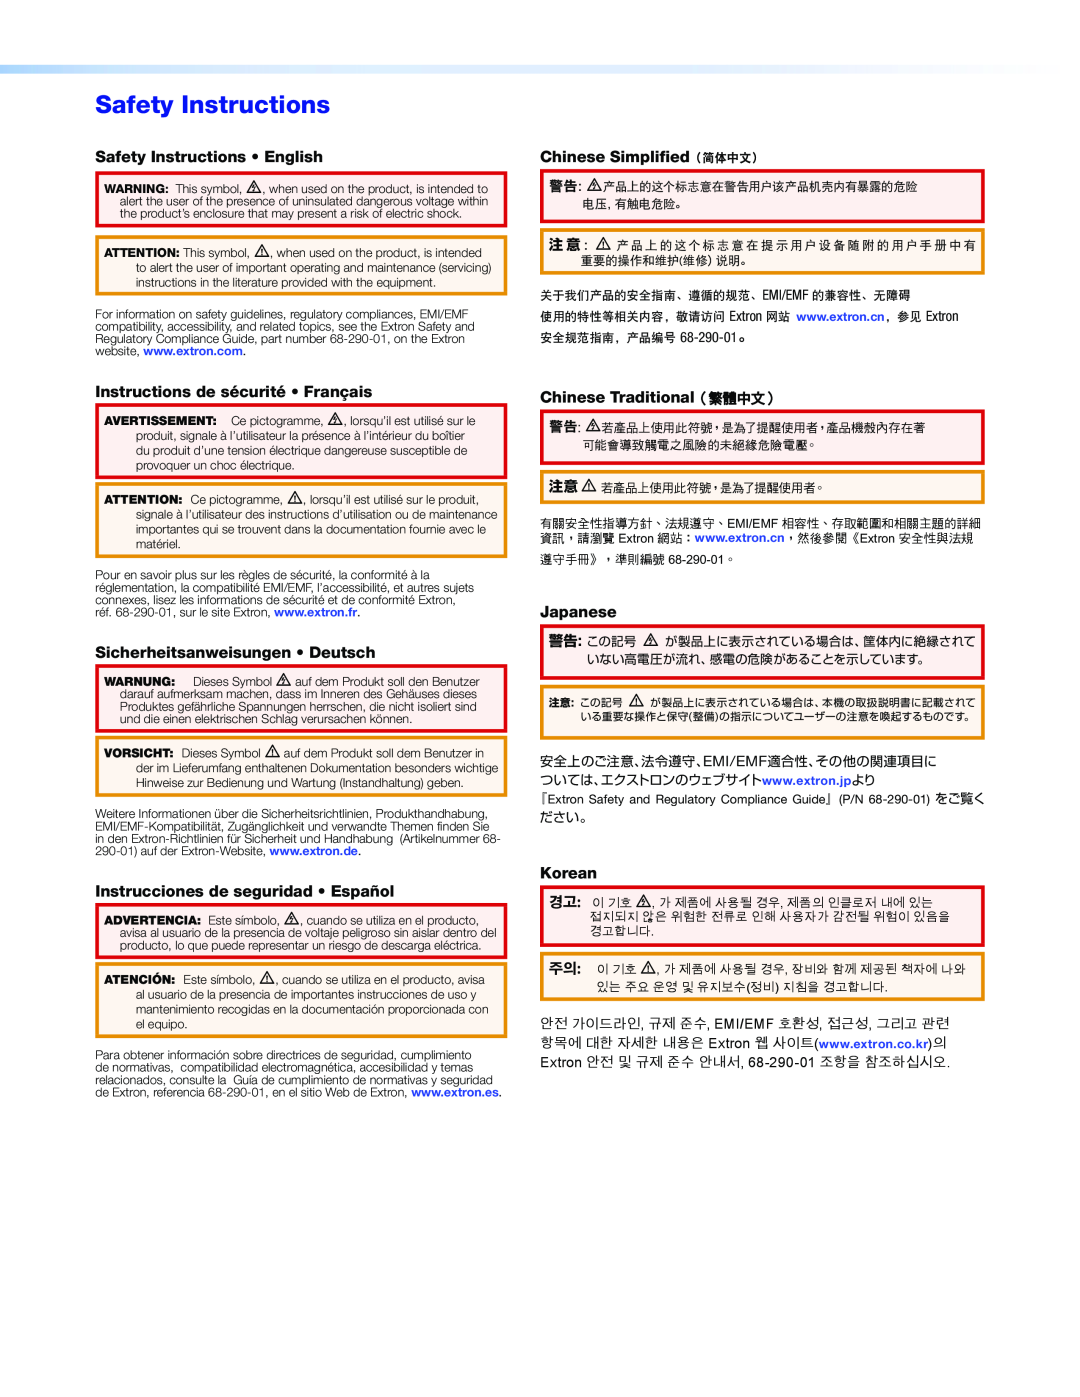 Extron electronic VNR 100 Safety Instructions English, Chinese Simplified（简体中文）, Instructions de sécurité Français 